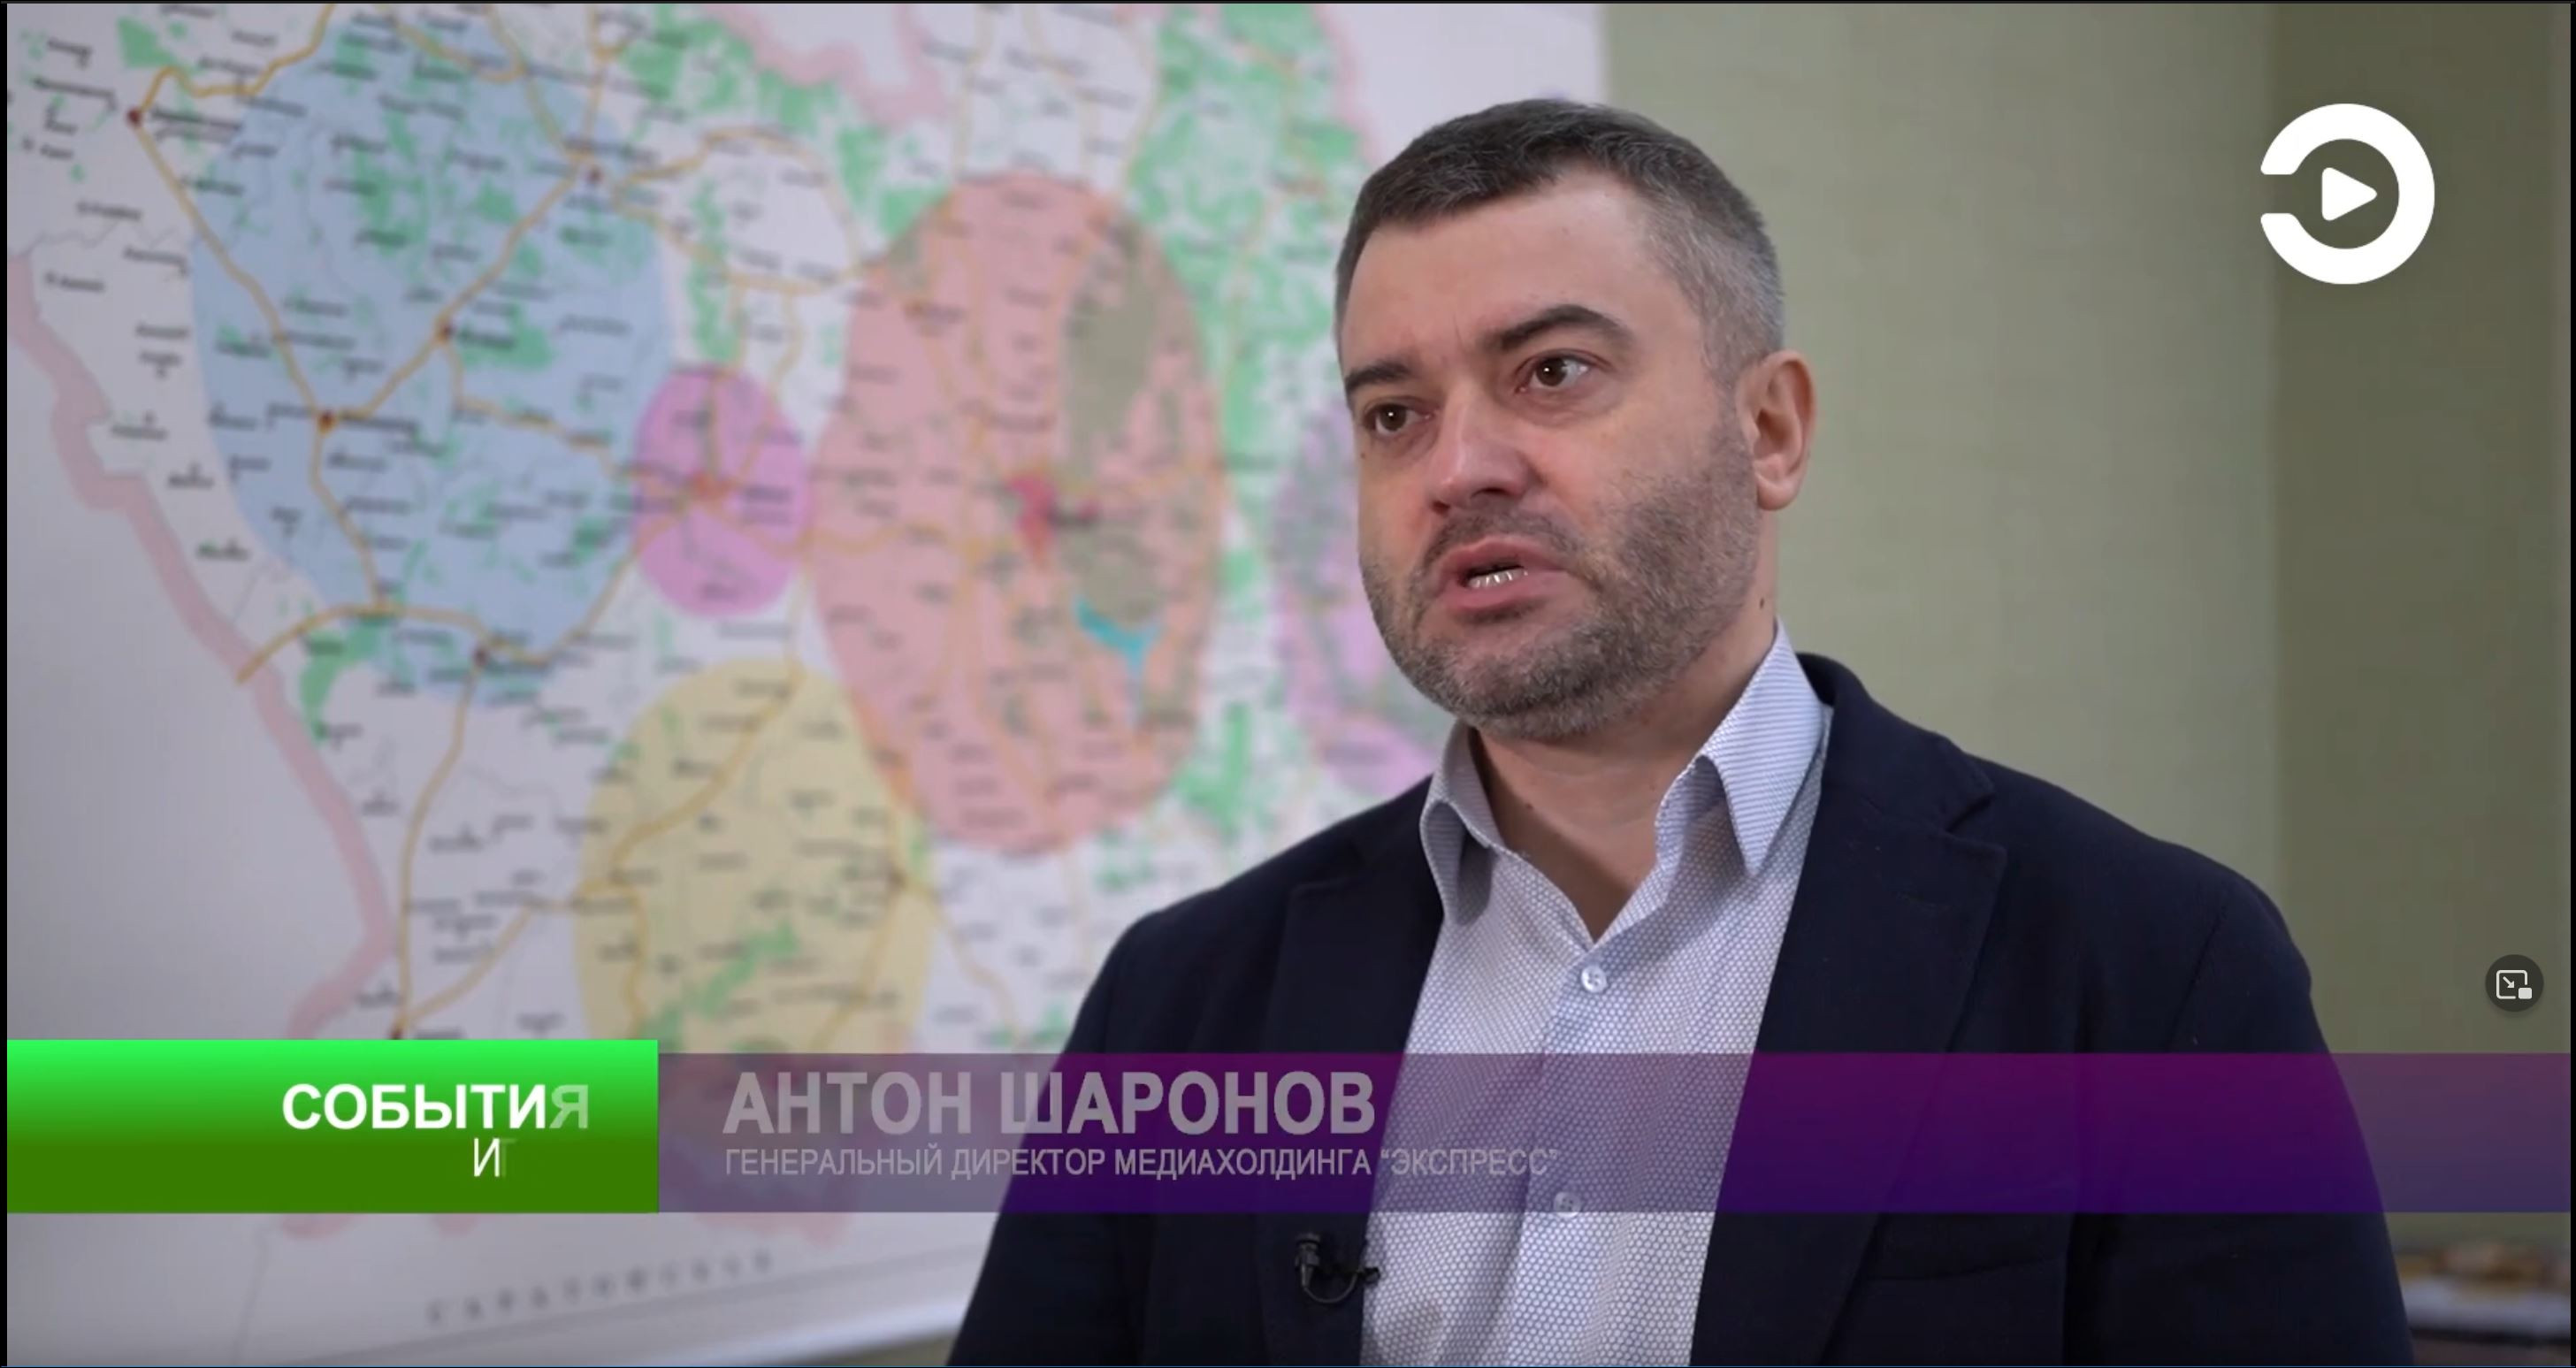 Антон Шаронов (гендиректор медиахолдинга «Экспресс») написал заявление в полицию